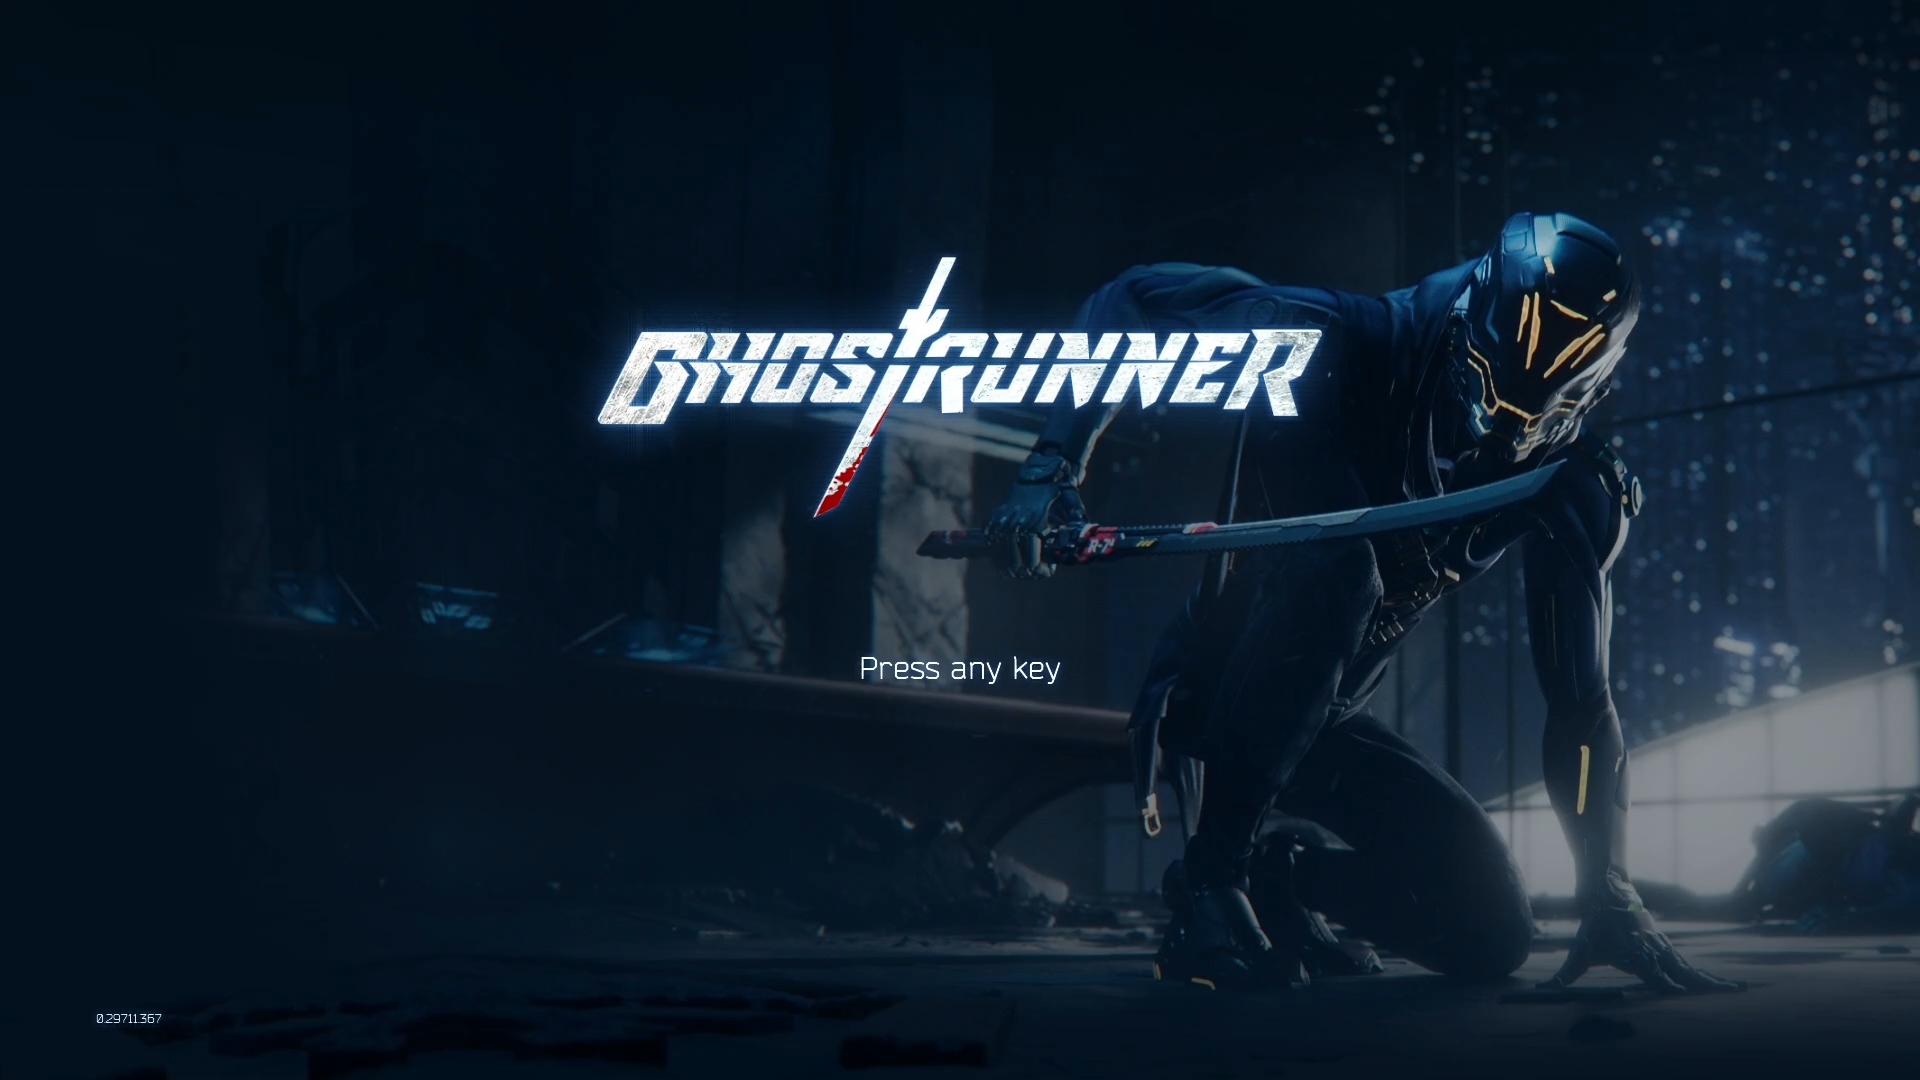 リトライ上等！ 一筋の活路を見出せ！「Ghostrunner（ゴーストランナー）」ファーストインプレッション - GAME Watch